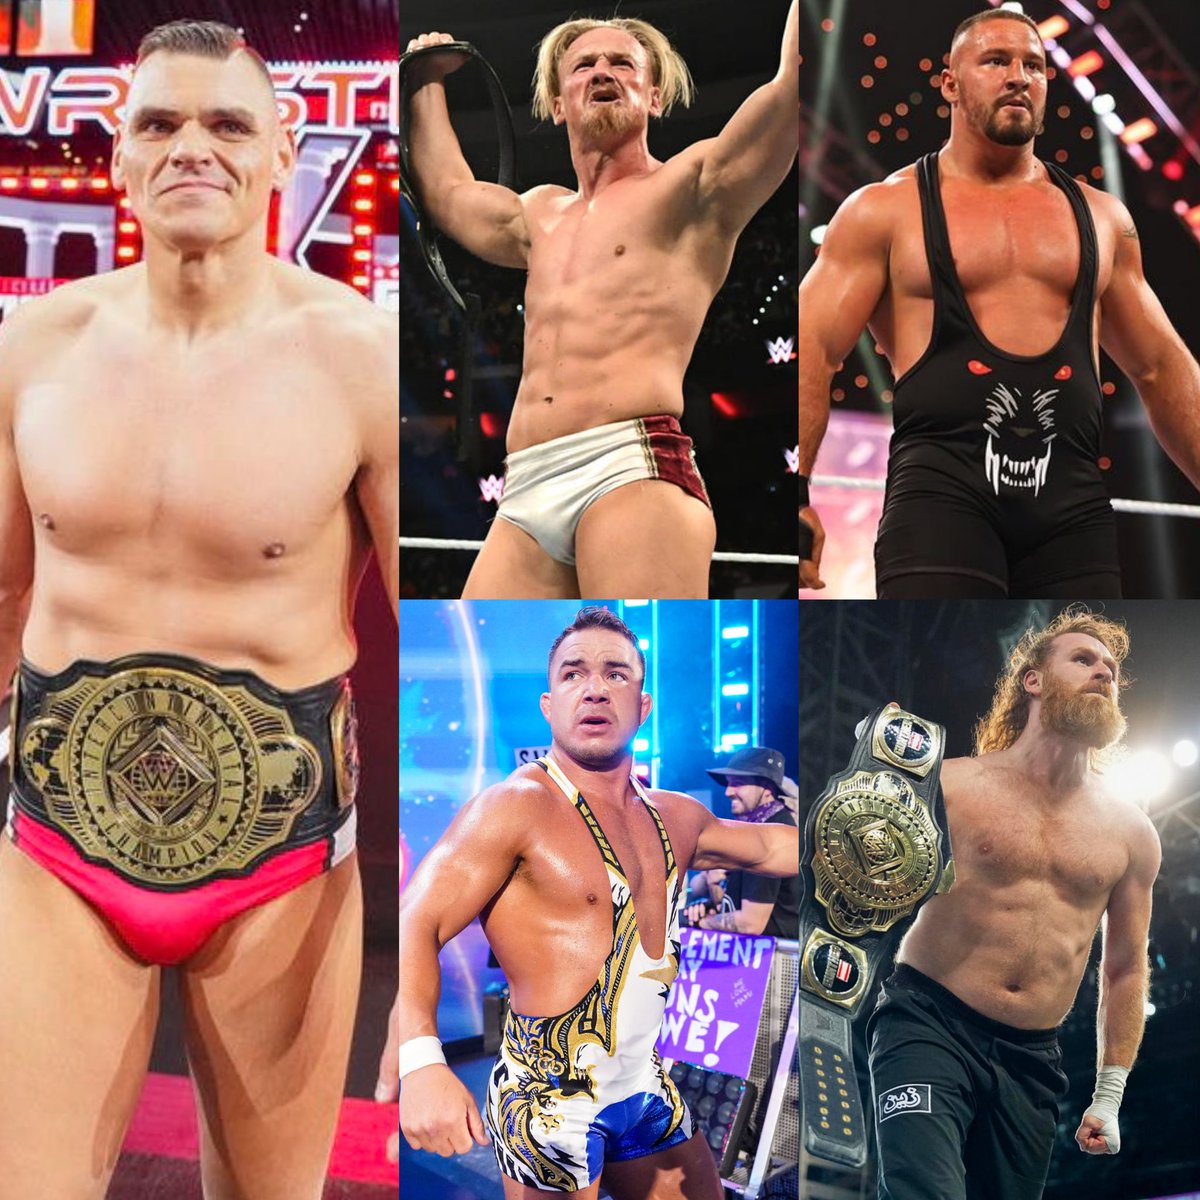 Gunther has been beaten by 4 wrestlers in WWE. - Ilja Dragunov - Bron Breakker - Chad Gable - Sami Zayn